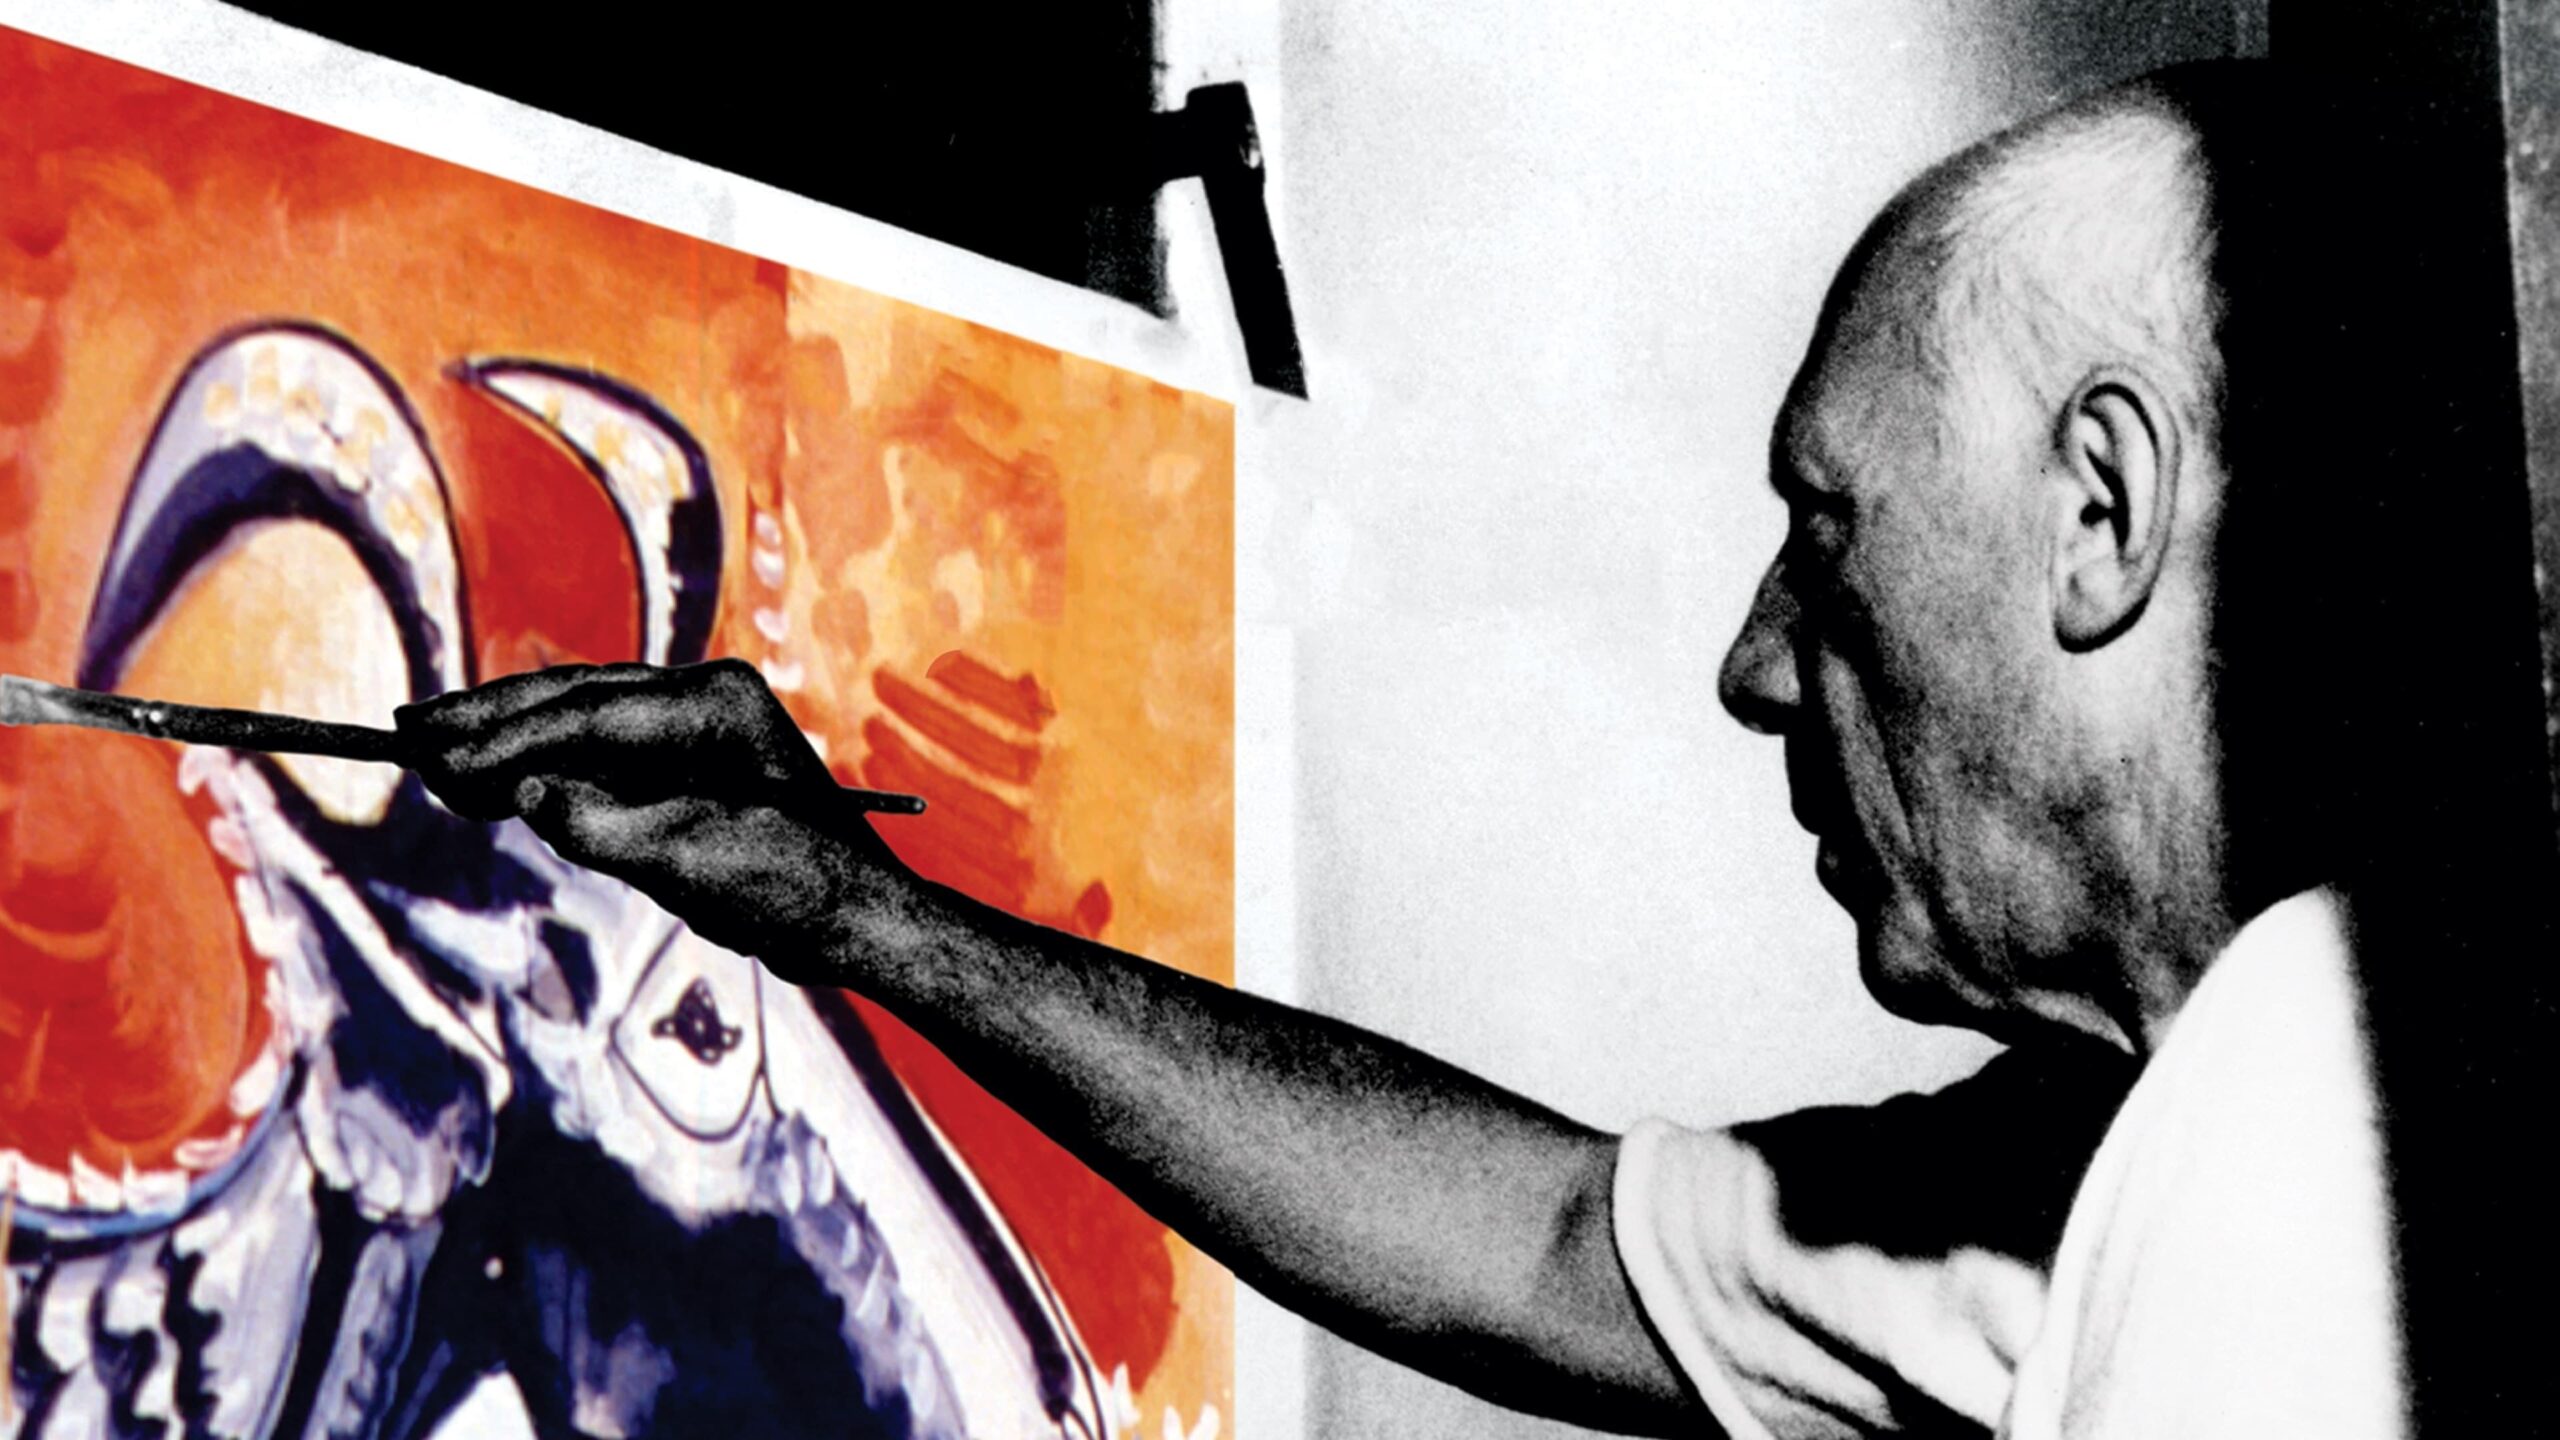 دانلود فیلم The Mystery of Picasso 1956